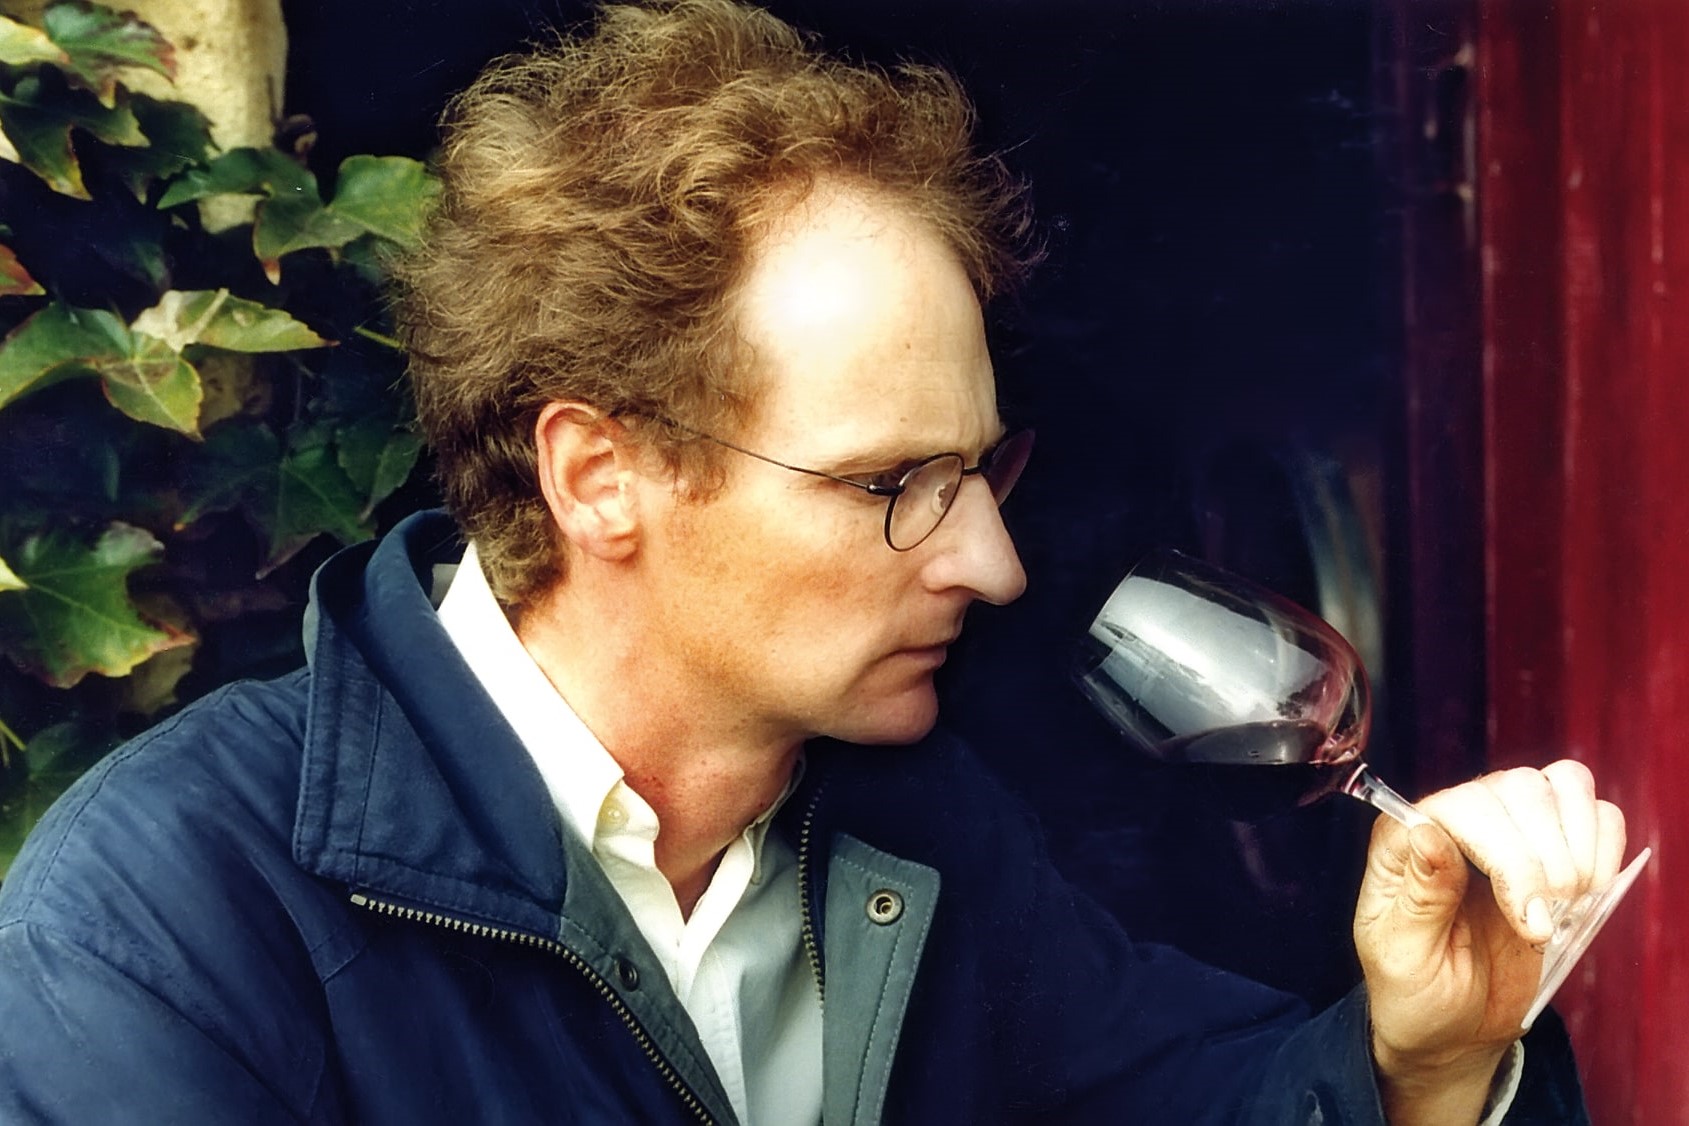 Peter in 1999